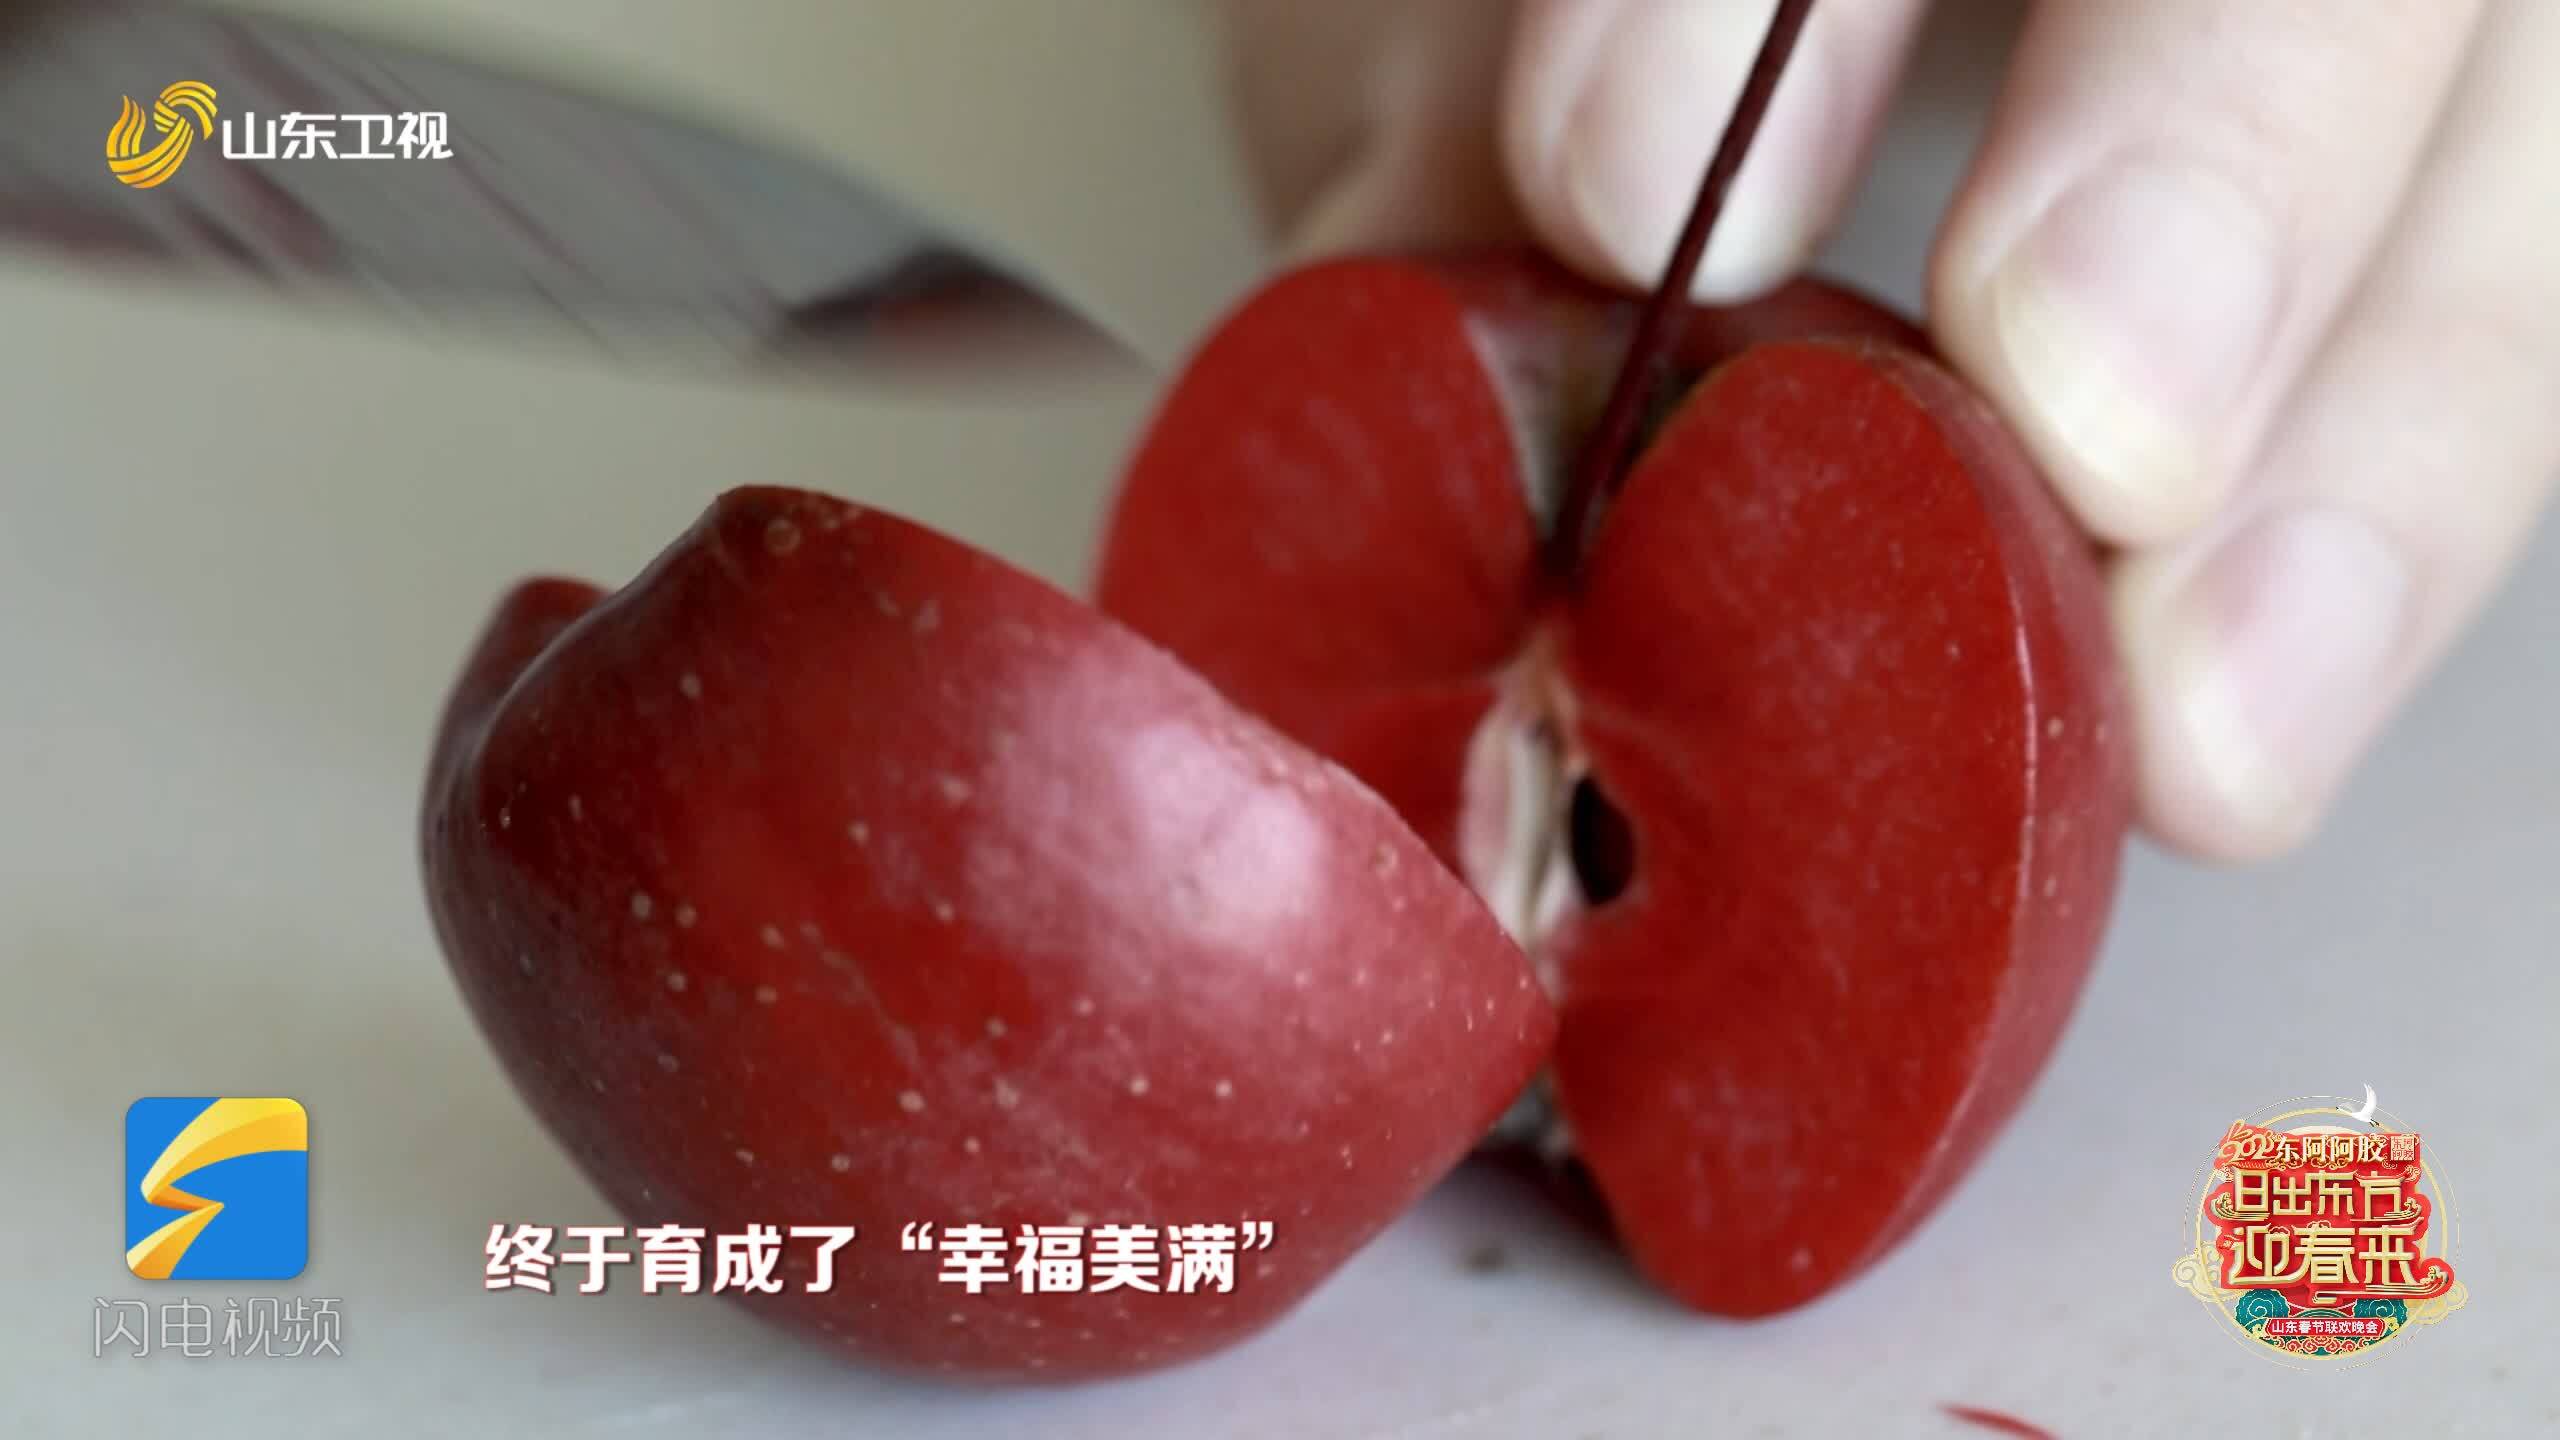 “幸福美满”填补中国红肉苹果空白 山东春晚现场分享16年培育历程